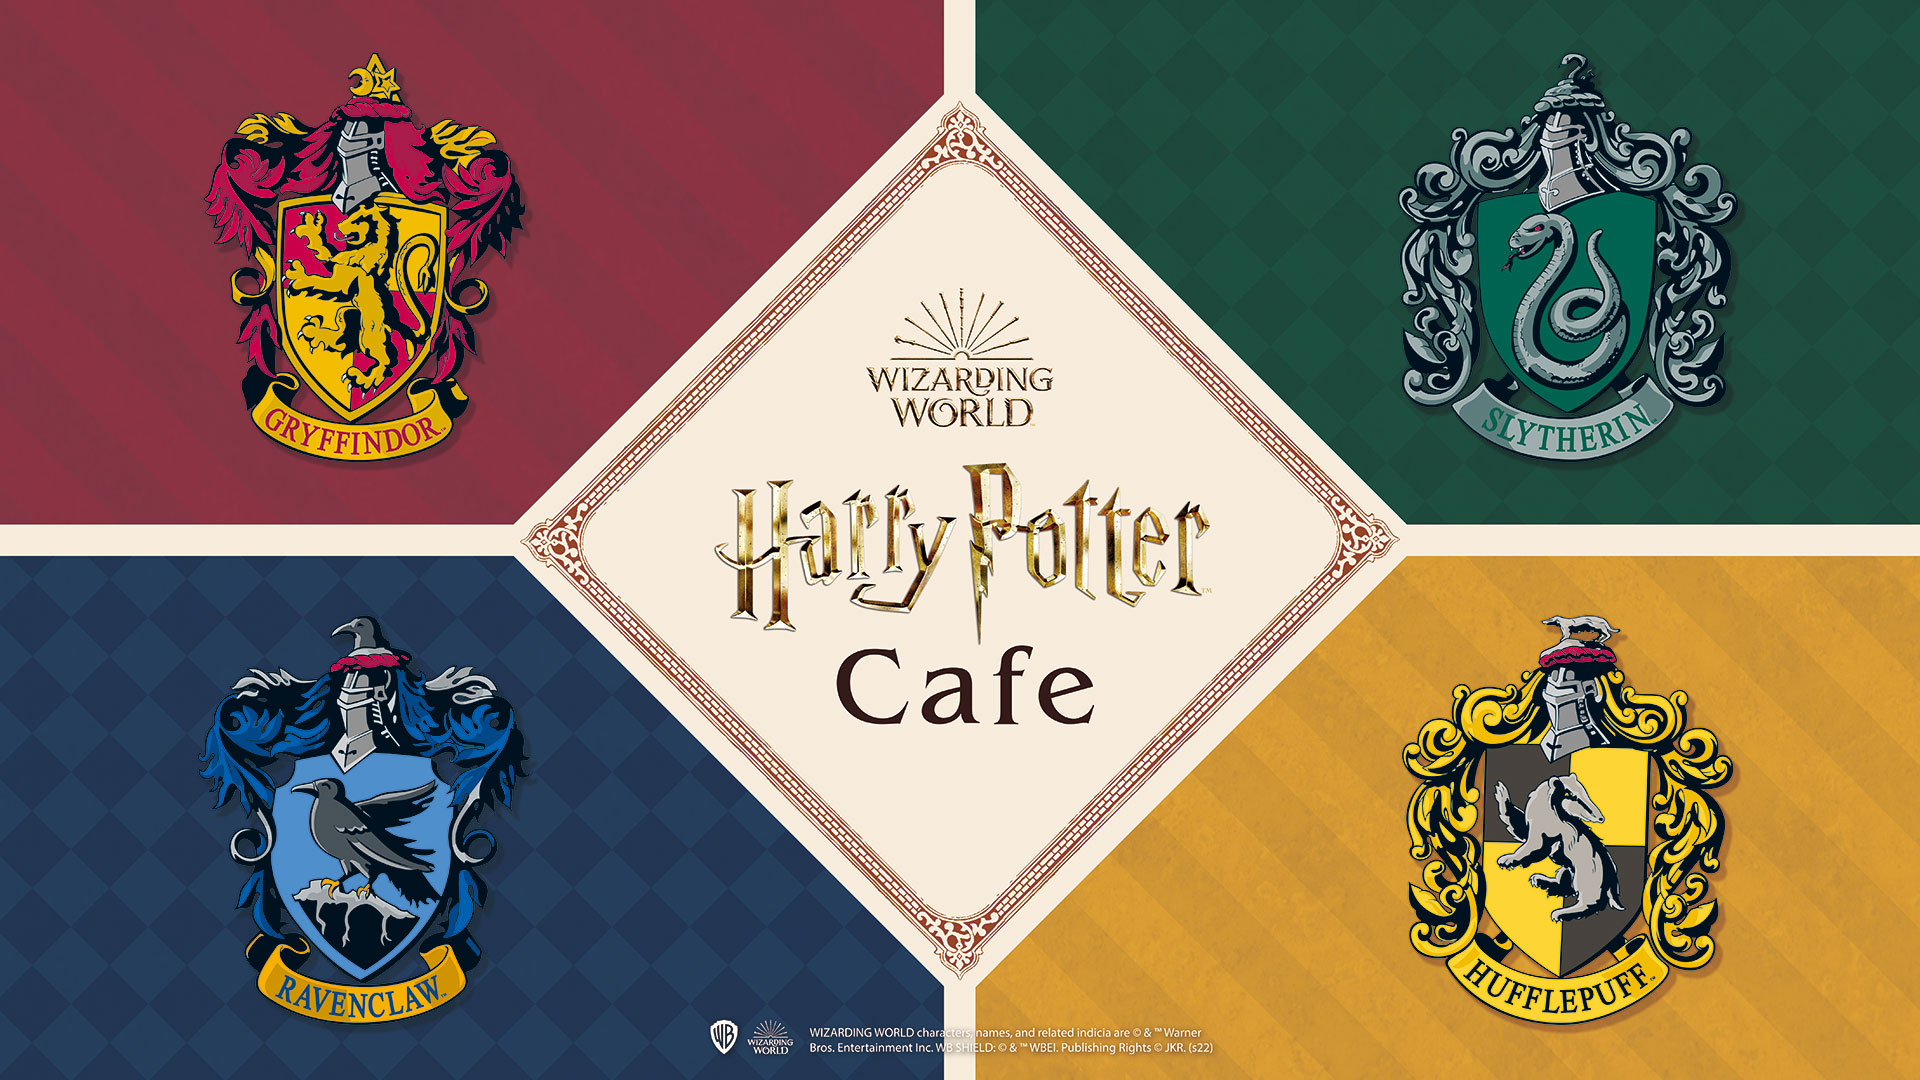 赤坂の街にハリー・ポッター魔法ワールドにインスパイアされた世界が登場💜🖤「Harry Potter Cafe」が6月16日(火)から赤坂Bizタワーで開催🧙‍♀️🪄✨